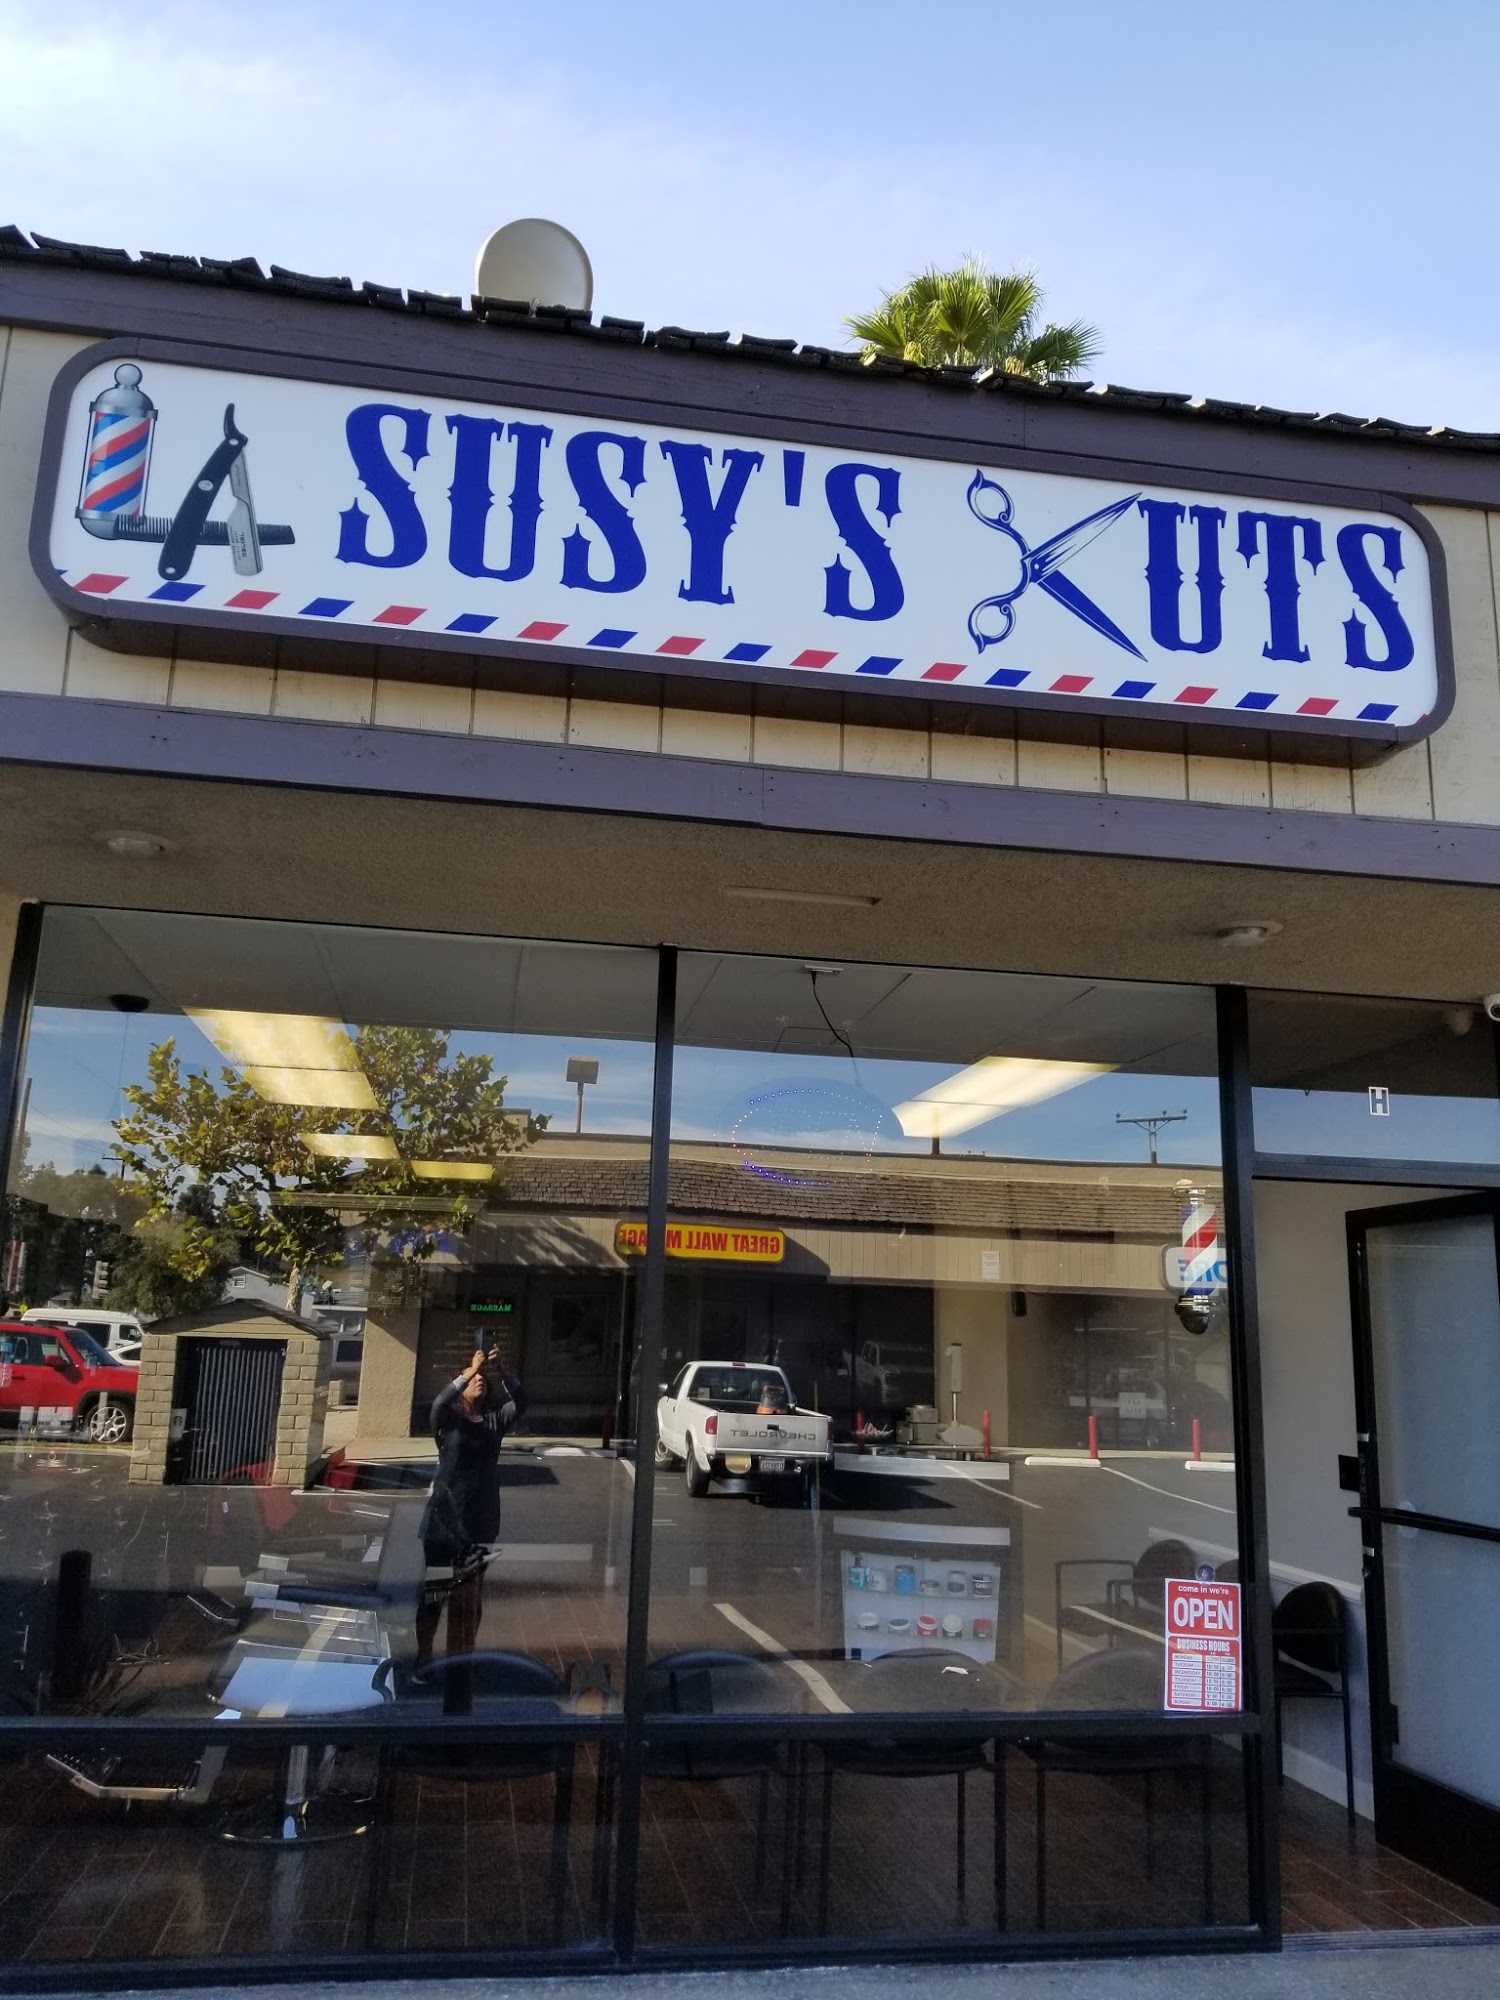 LA Susy's Cuts